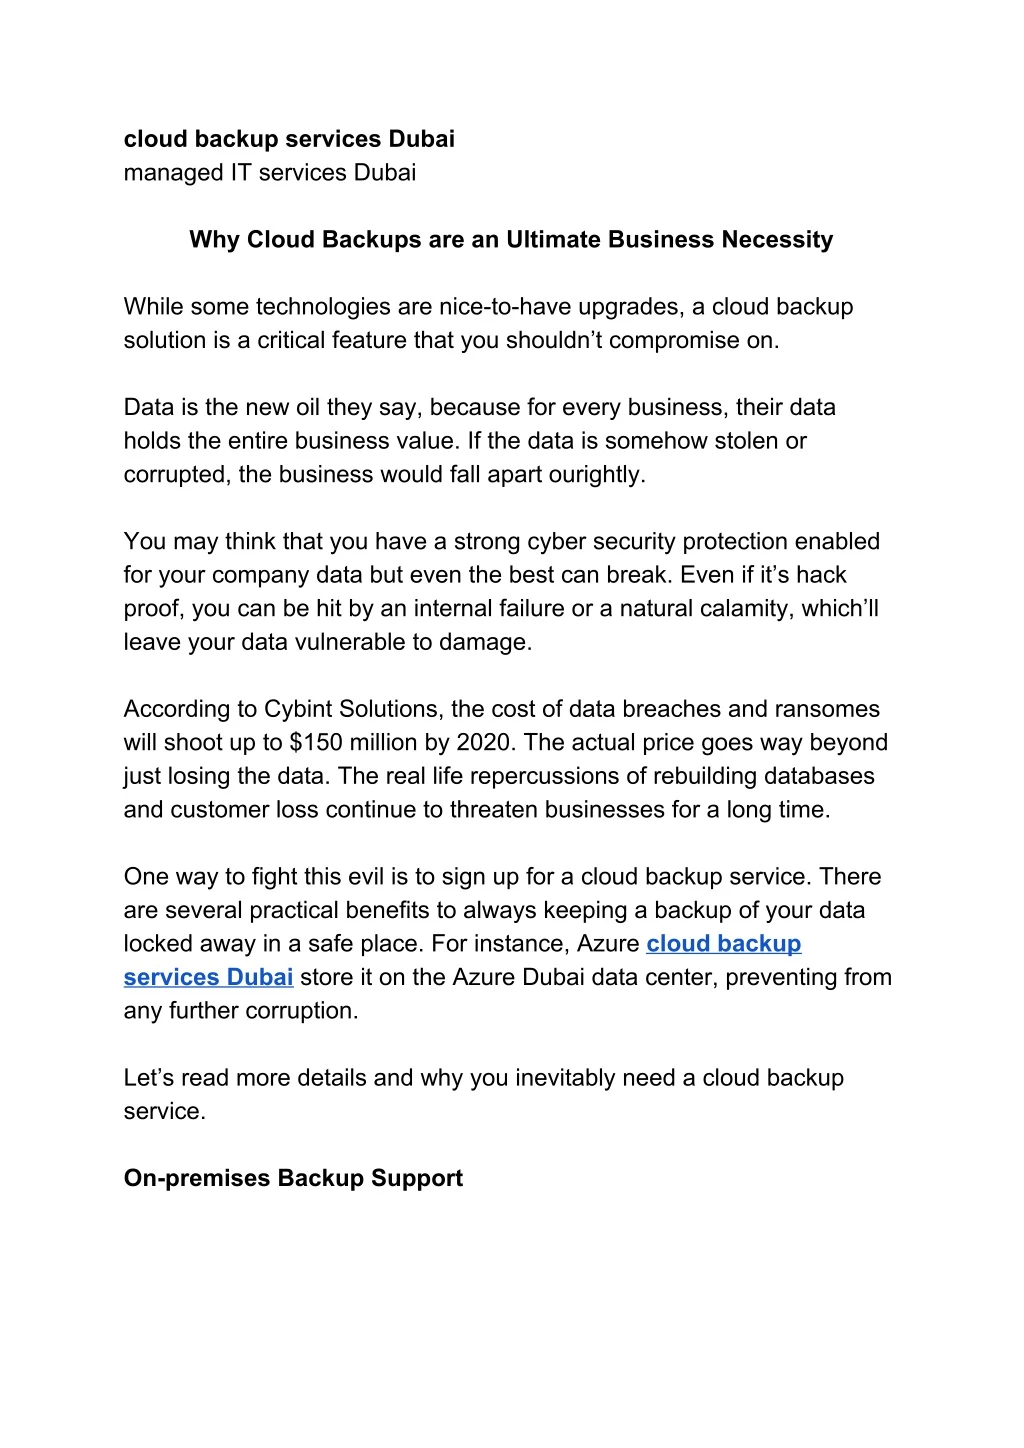 cloud backup services dubai managed it services